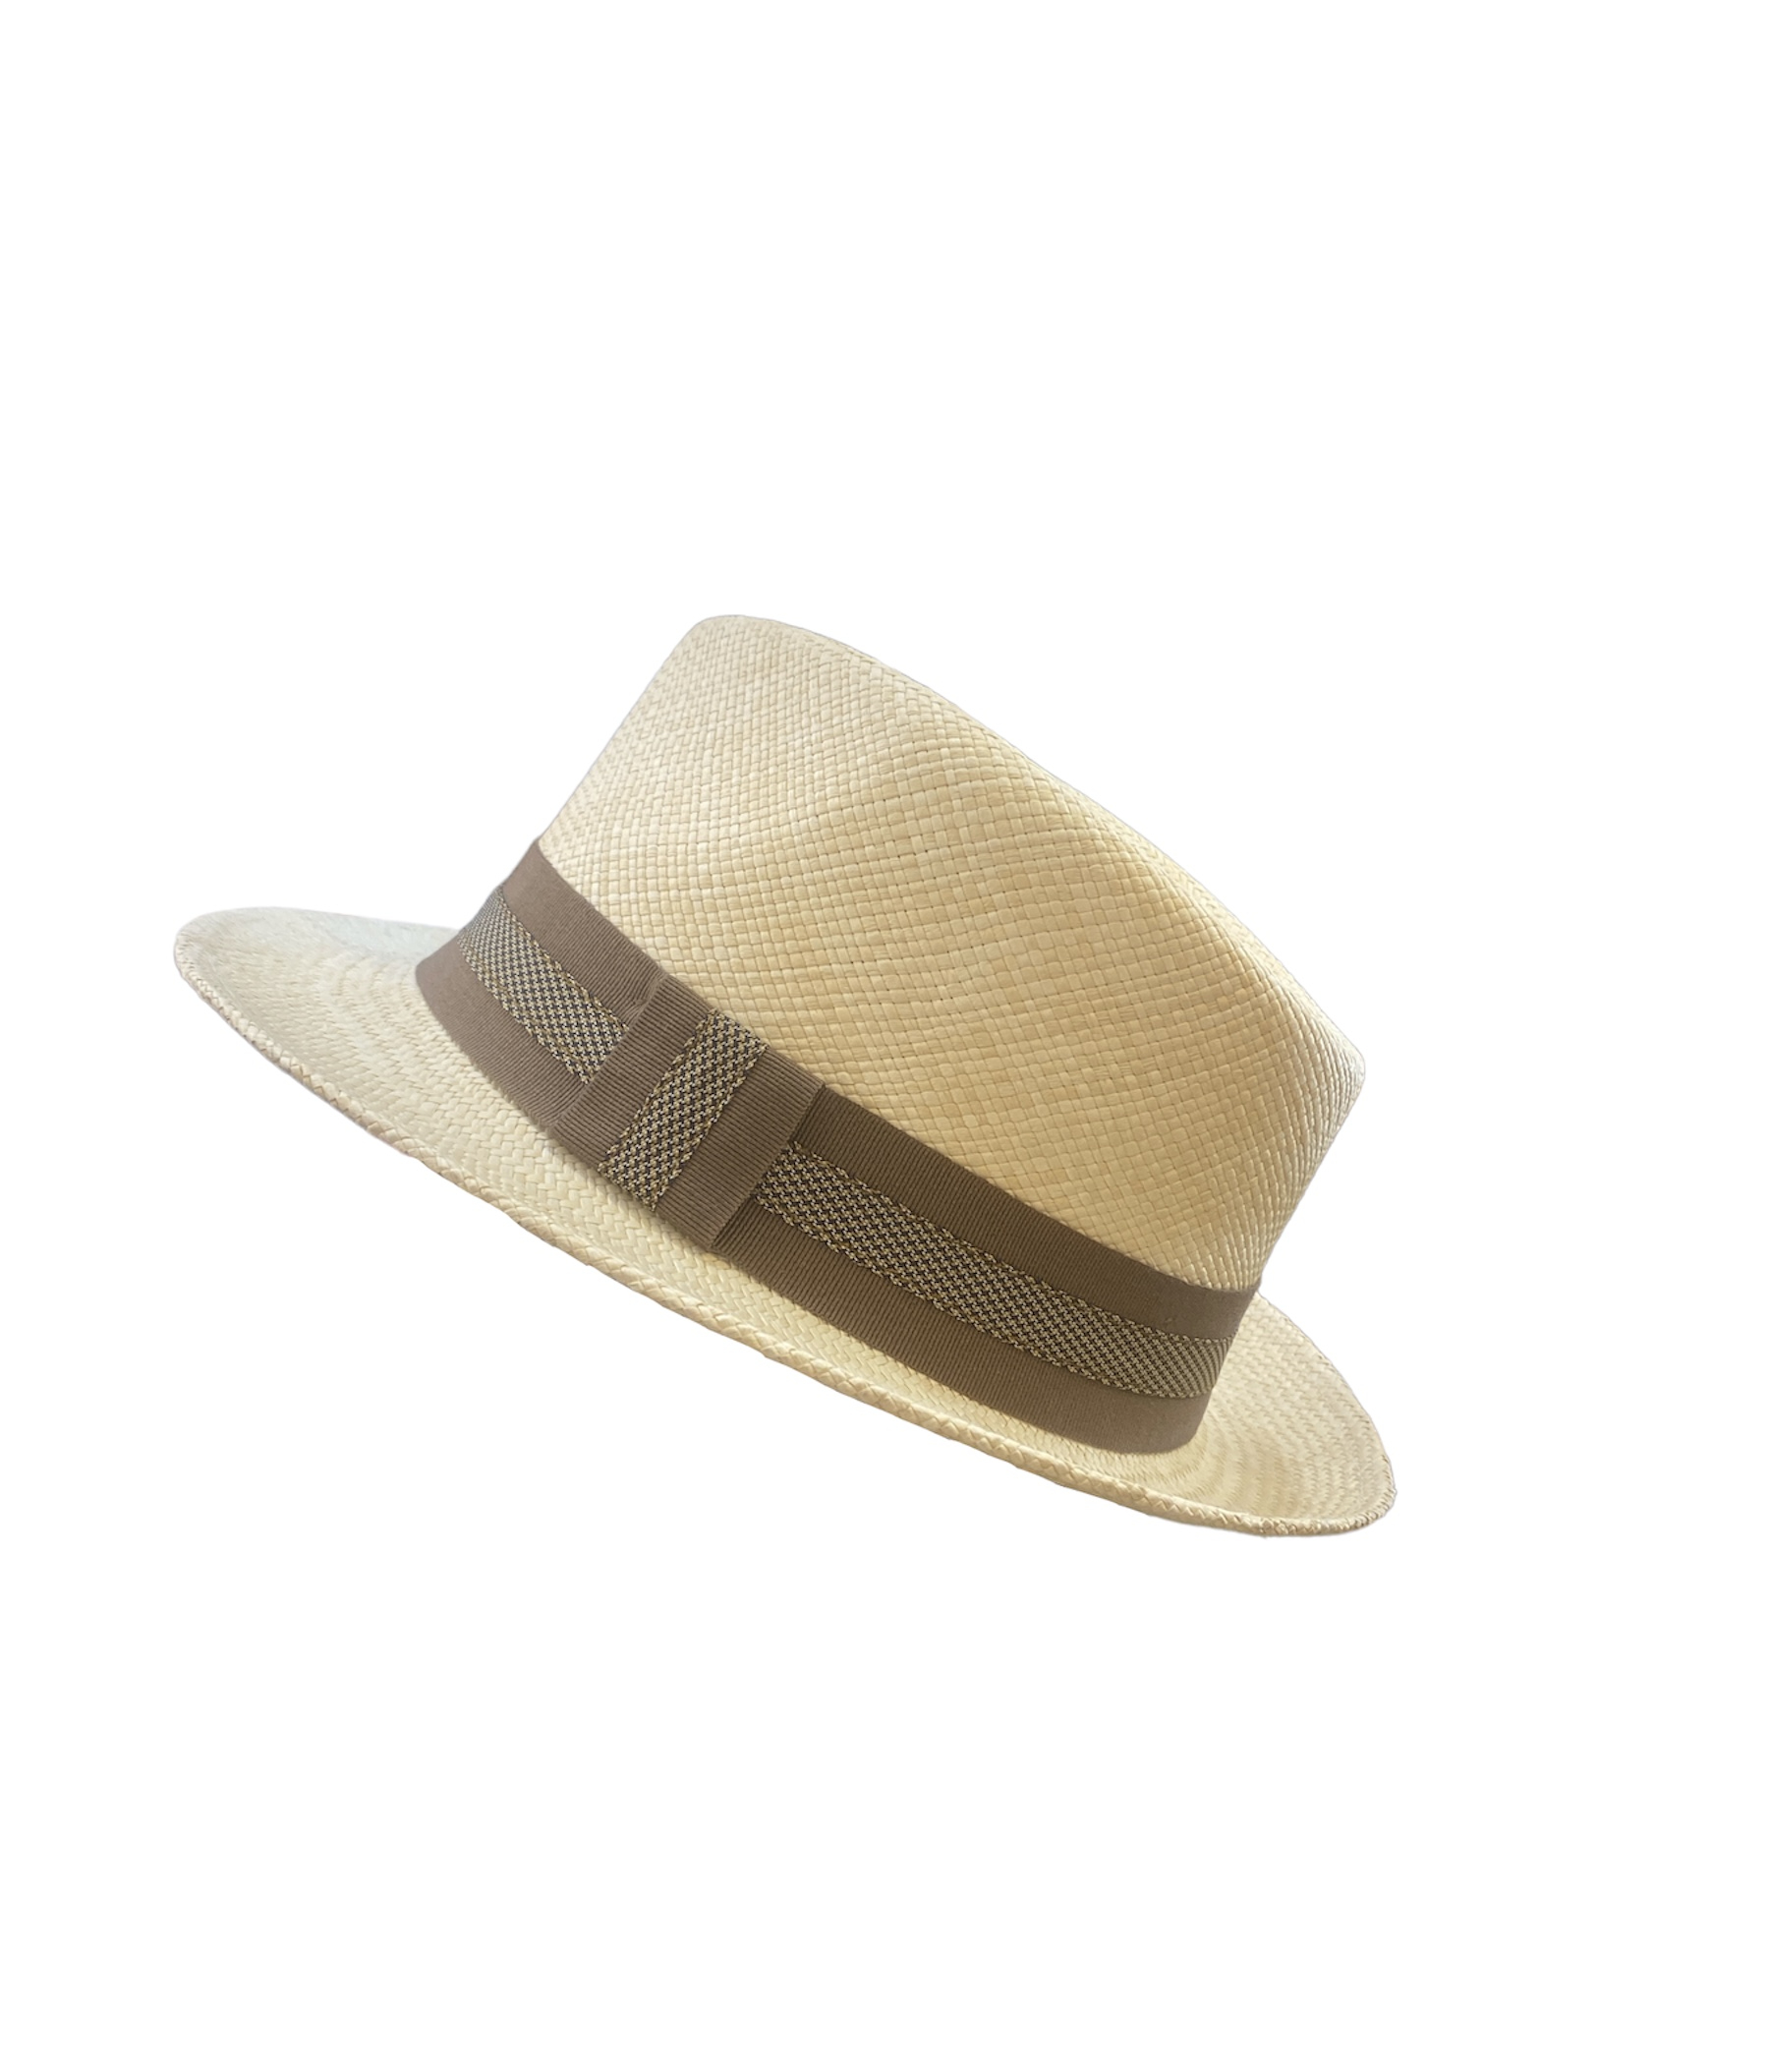 Chapeau Panama Trilby avec ganse marron et grise, disponible en taille 55, 57, 59, 61 et 62.